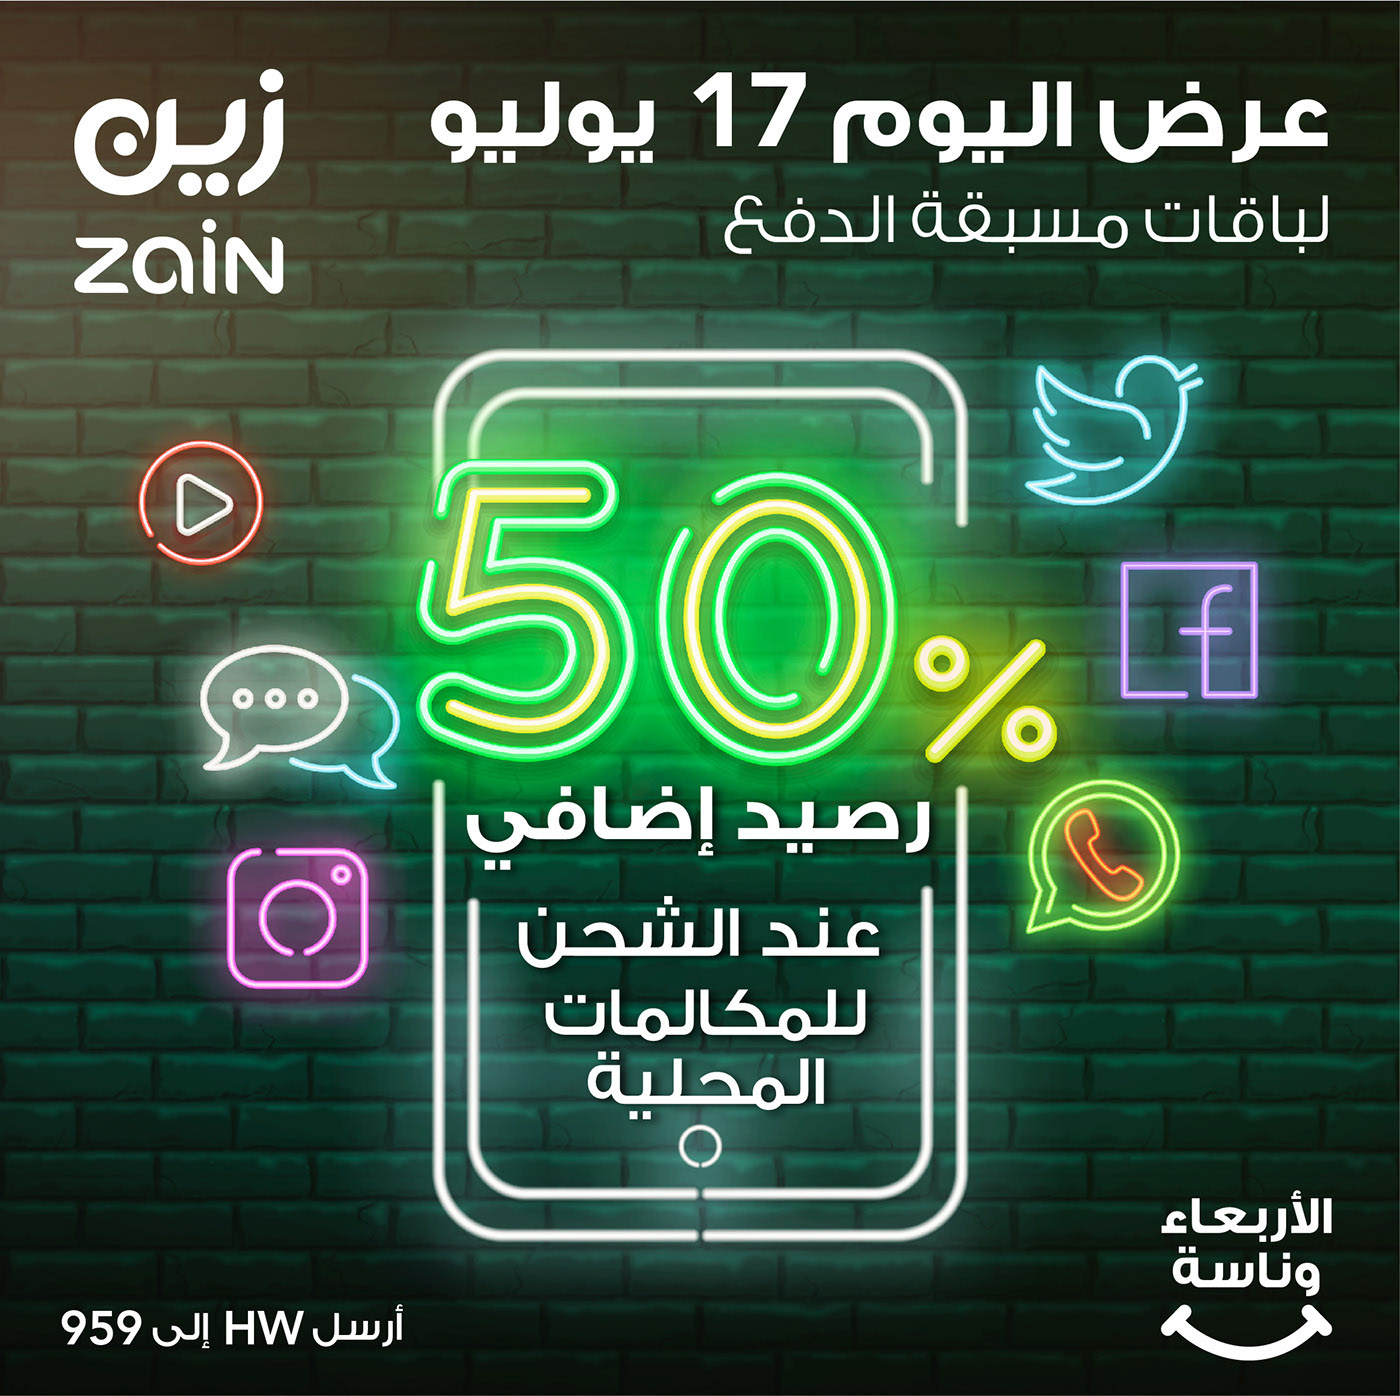 social media Zain Telecom Saudi Arabia